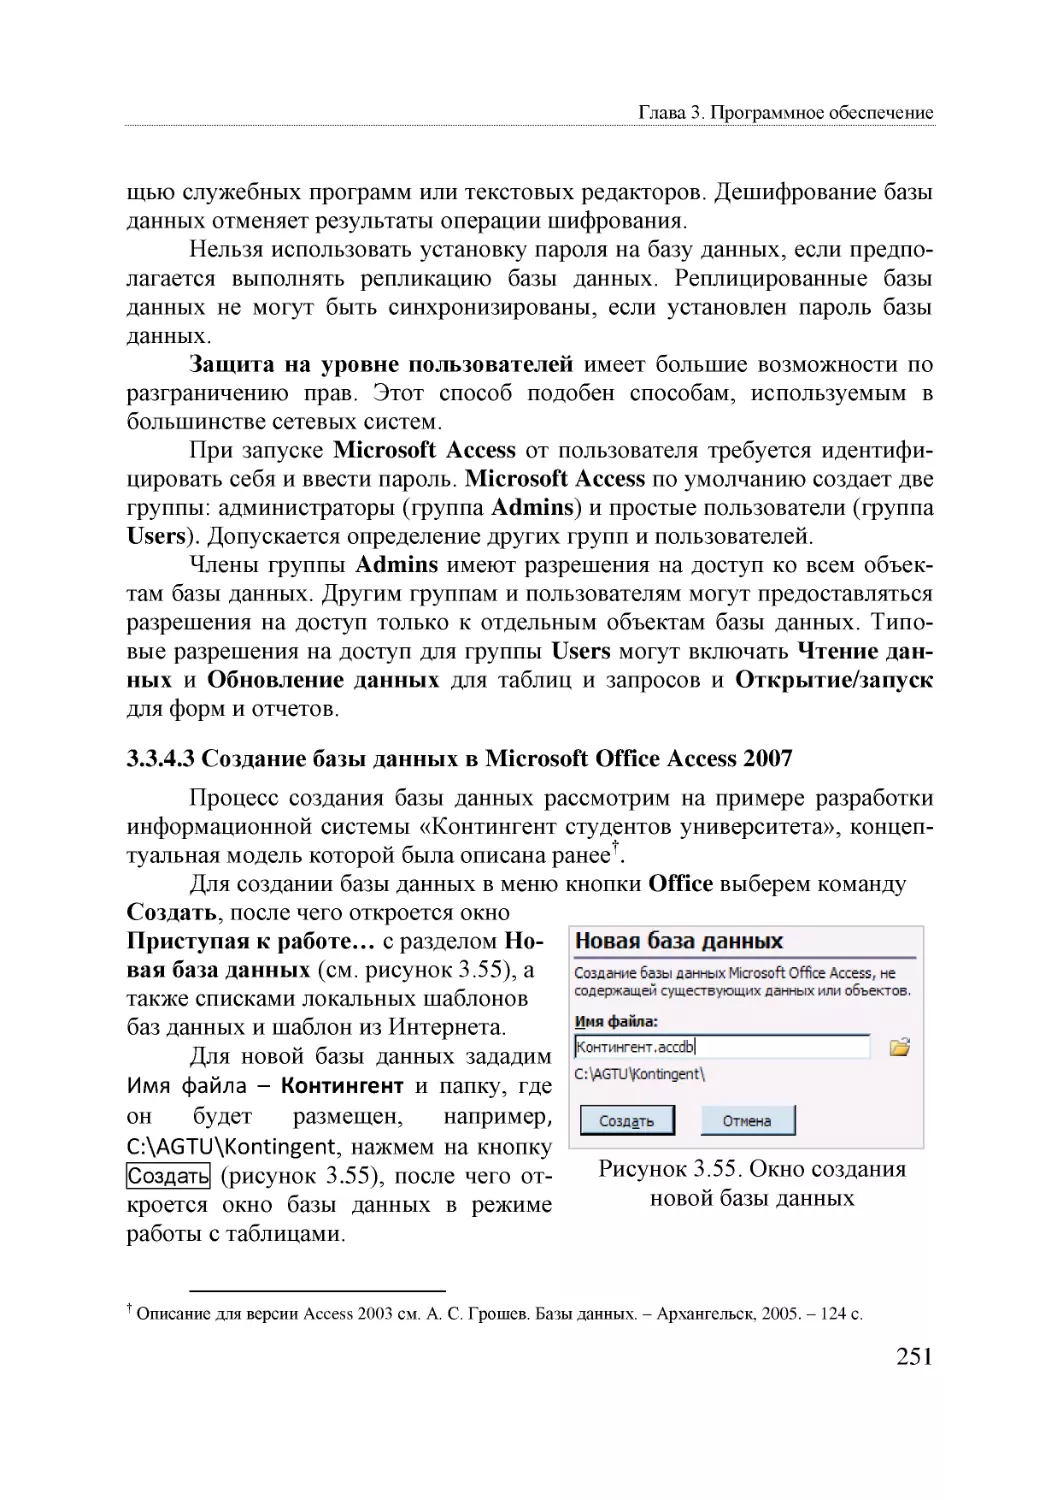 Informatika_Uchebnik_dlya_vuzov_2010 251